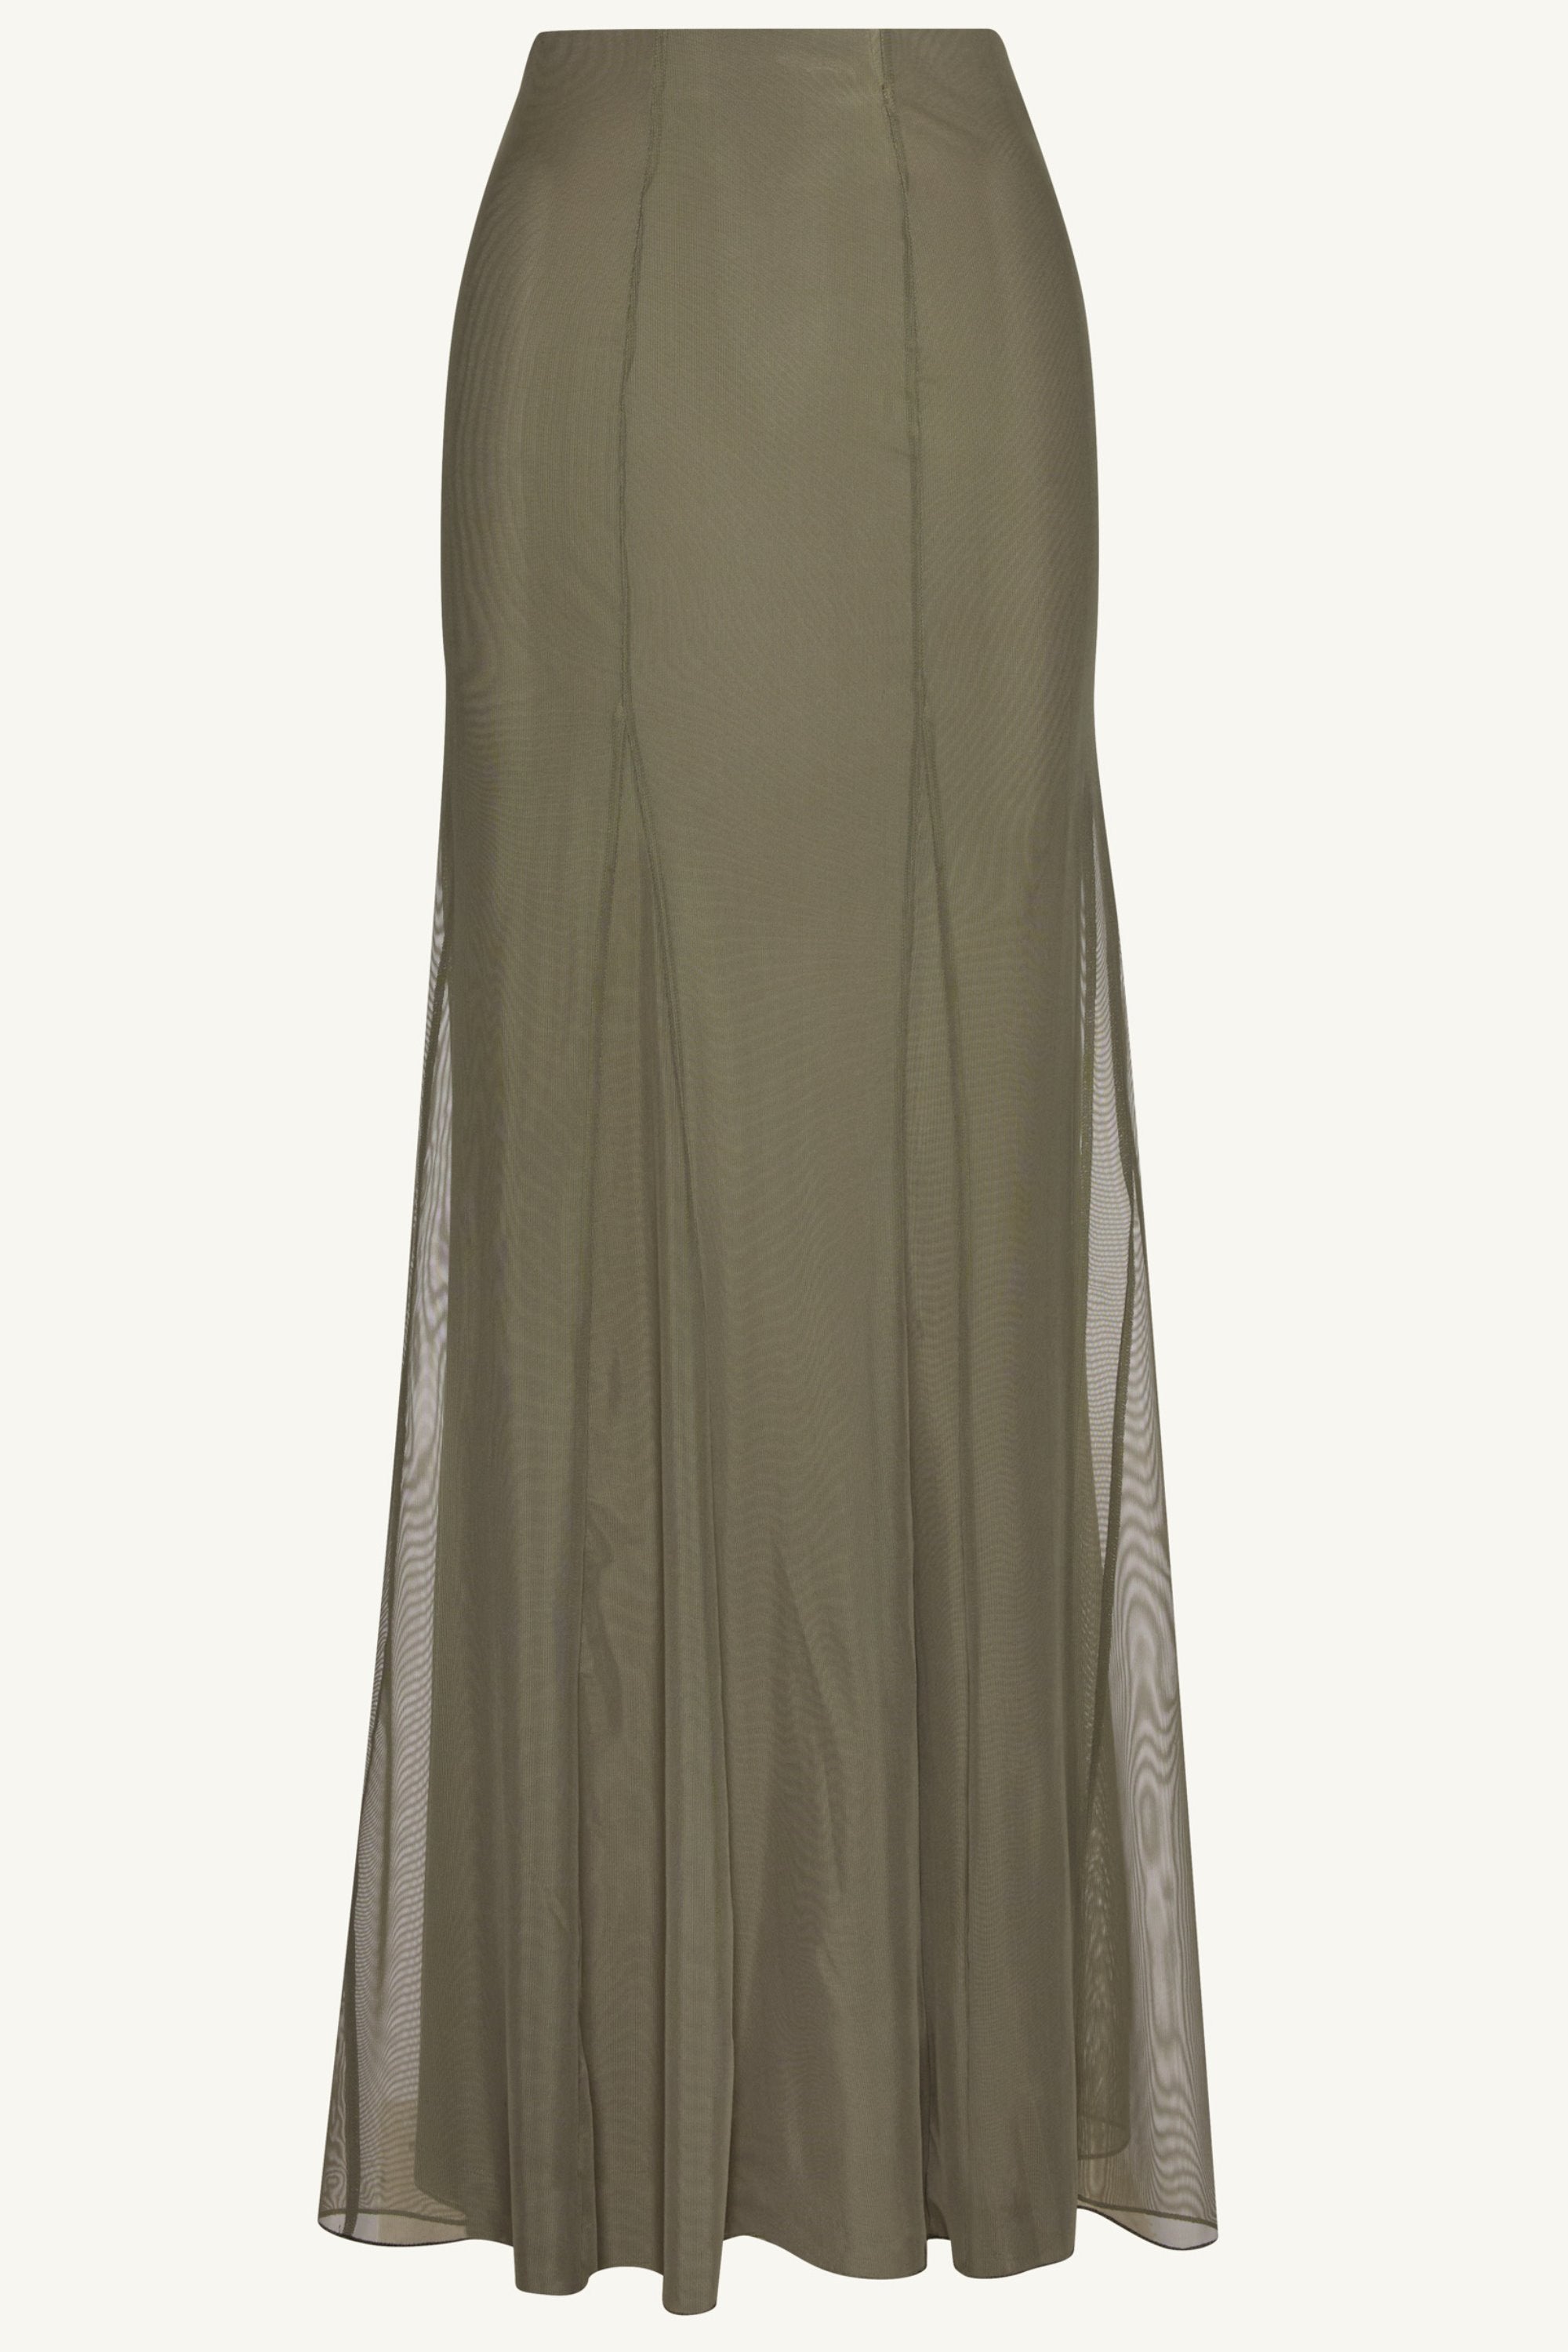 Milia Mesh Maxi Skirt - Smokey Olive Clothing Veiled 